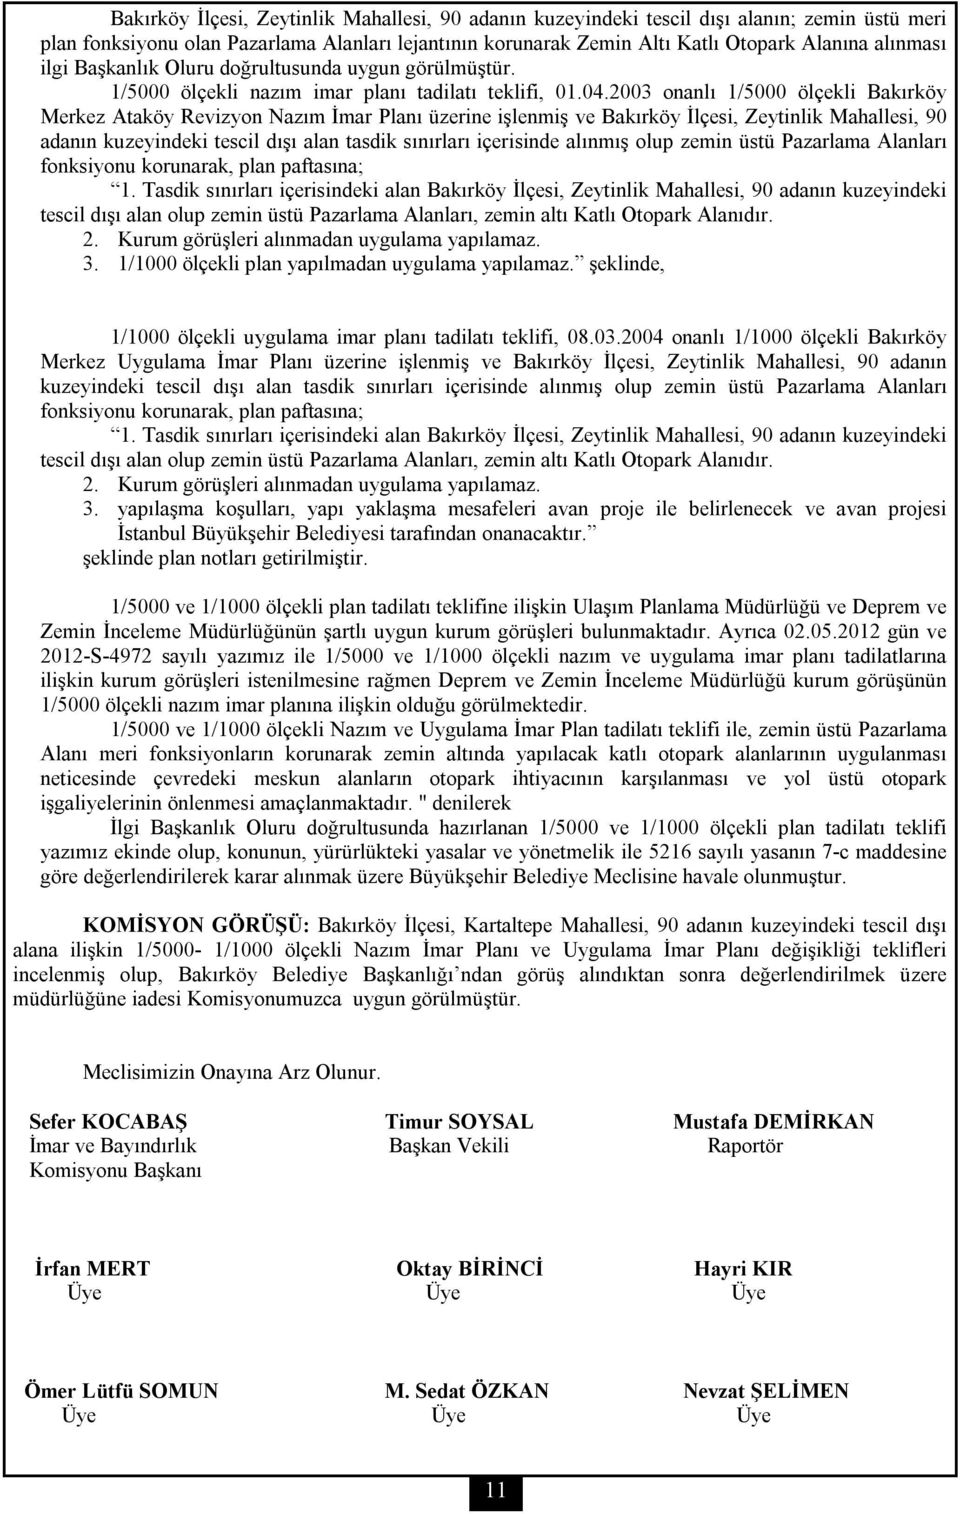 2003 onanlı 1/5000 ölçekli Bakırköy Merkez Ataköy Revizyon Nazım İmar Planı üzerine işlenmiş ve Bakırköy İlçesi, Zeytinlik Mahallesi, 90 adanın kuzeyindeki tescil dışı alan tasdik sınırları